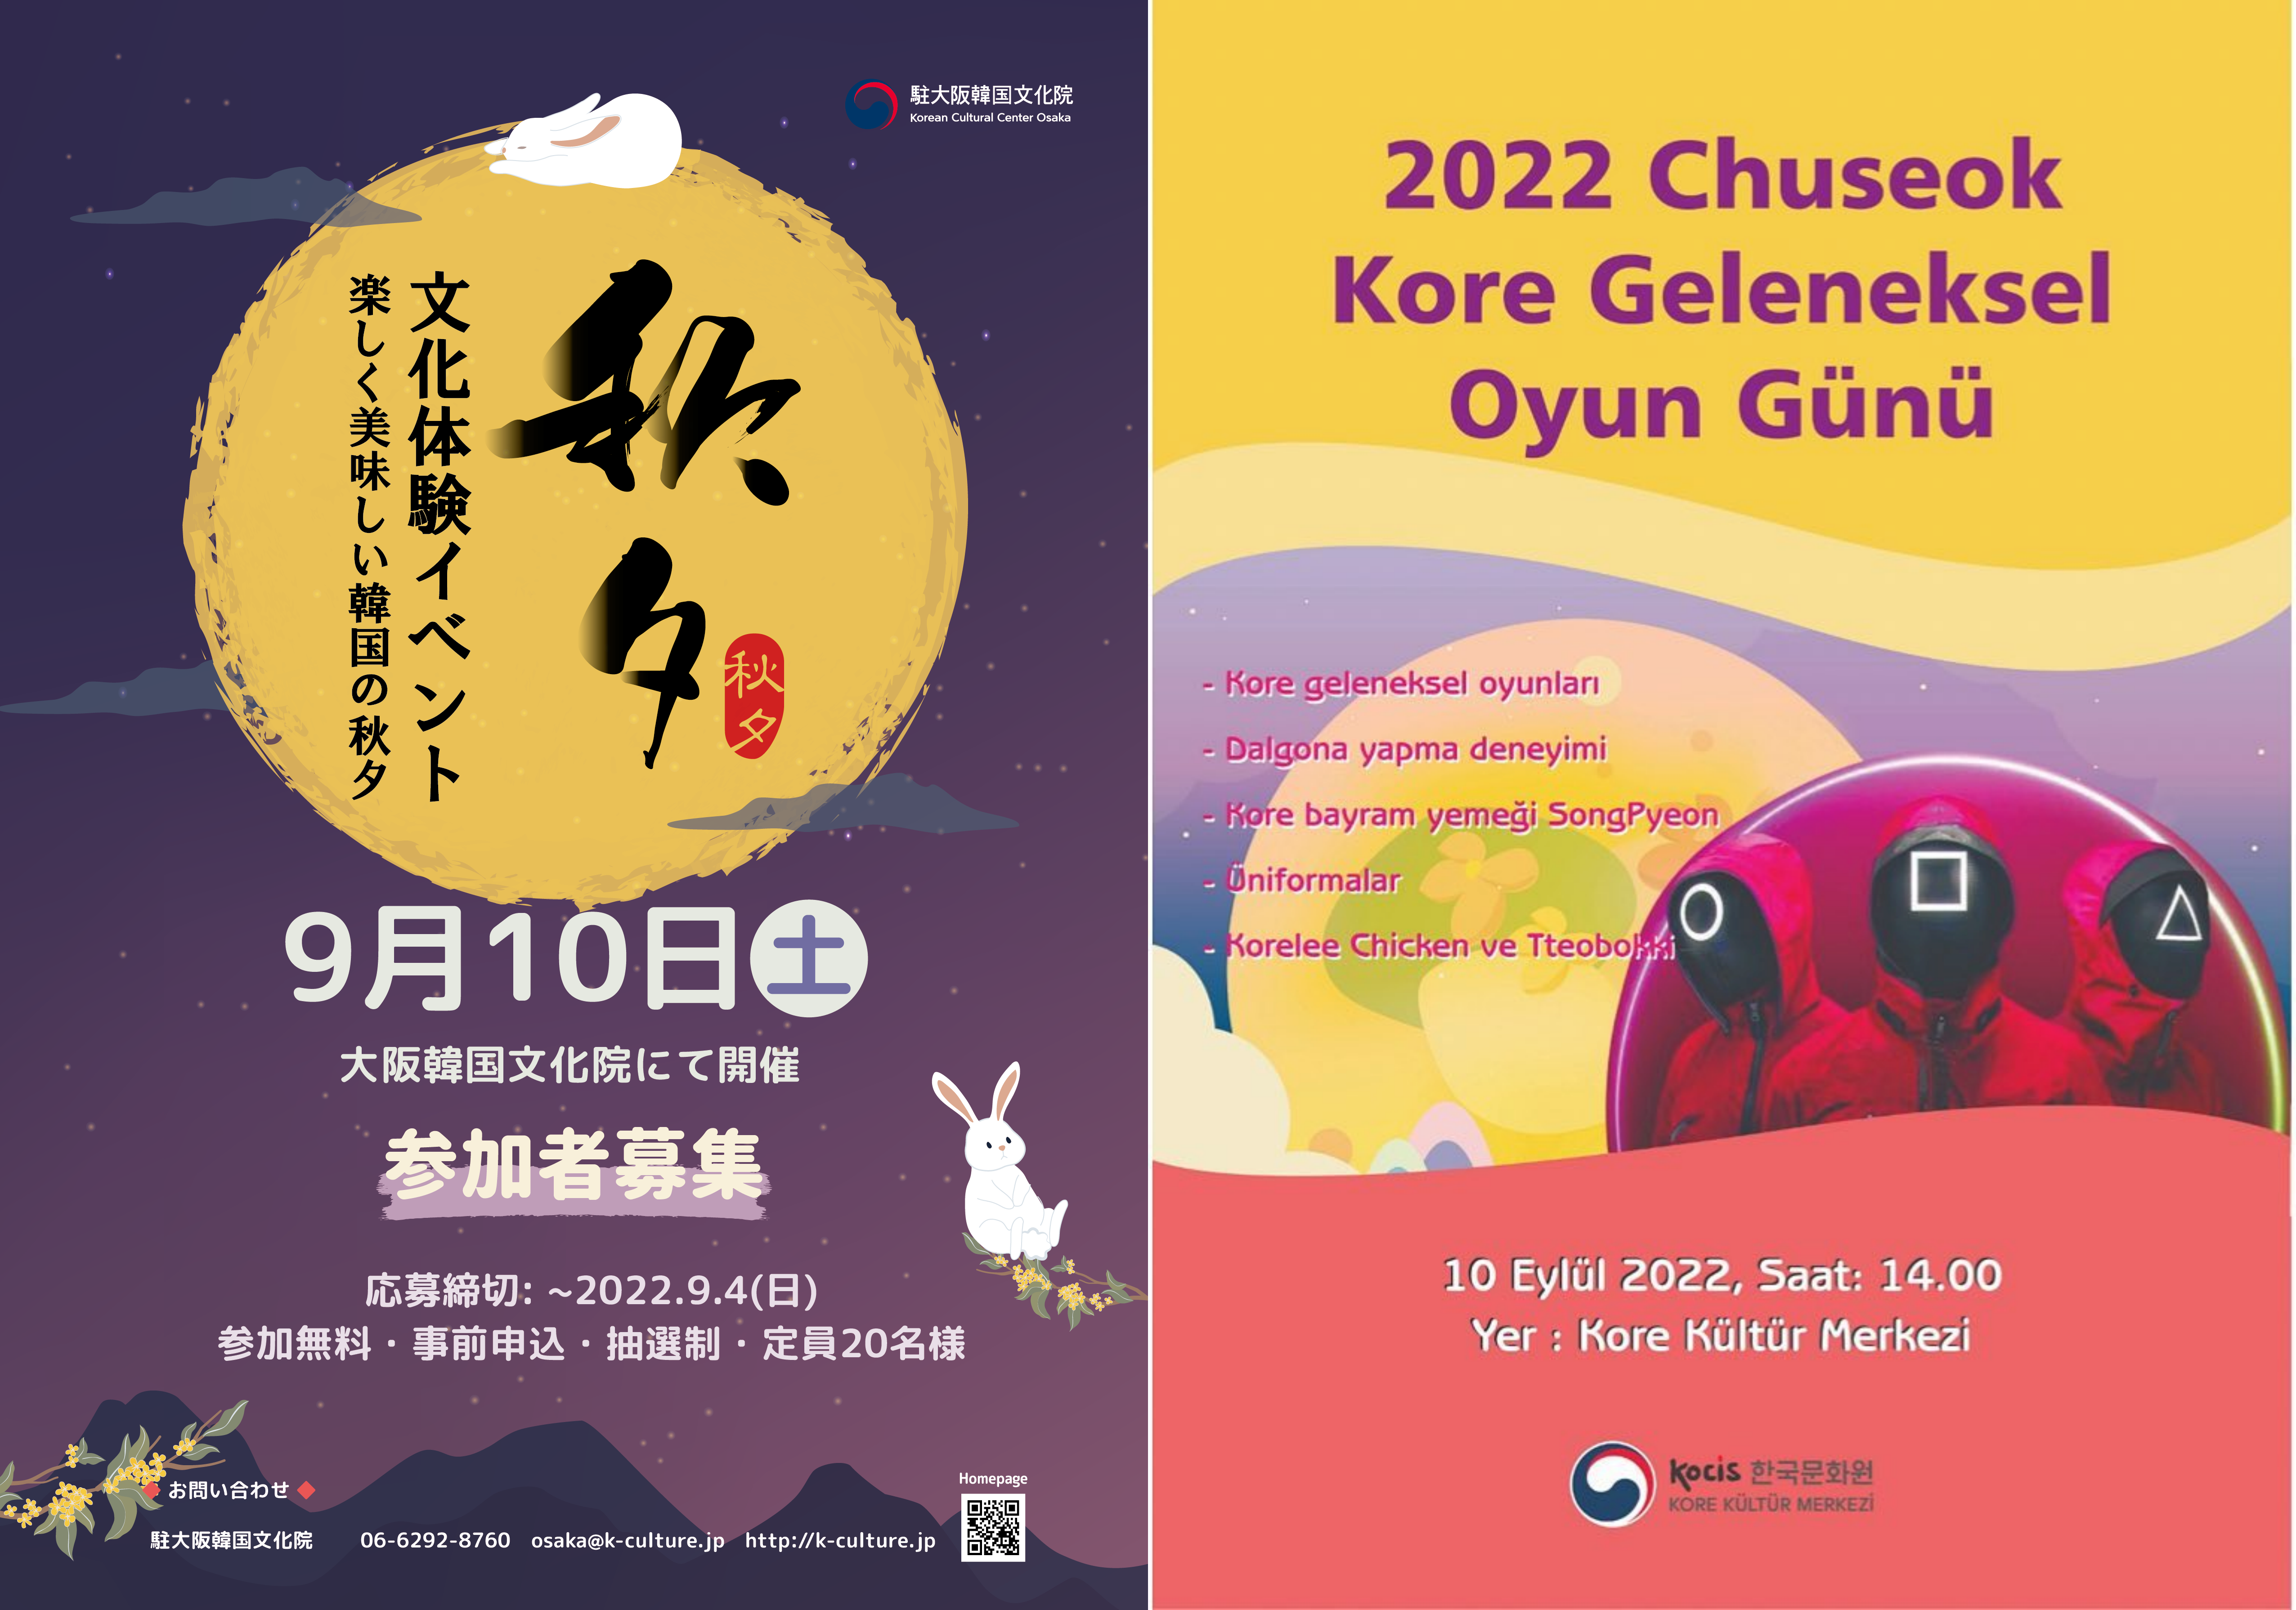 Афиши культурных мероприятий, посвященных празднику Чхусок, в Корейском культурном центре в Осаке (слева) и в Турции. / Фото: KOCIS